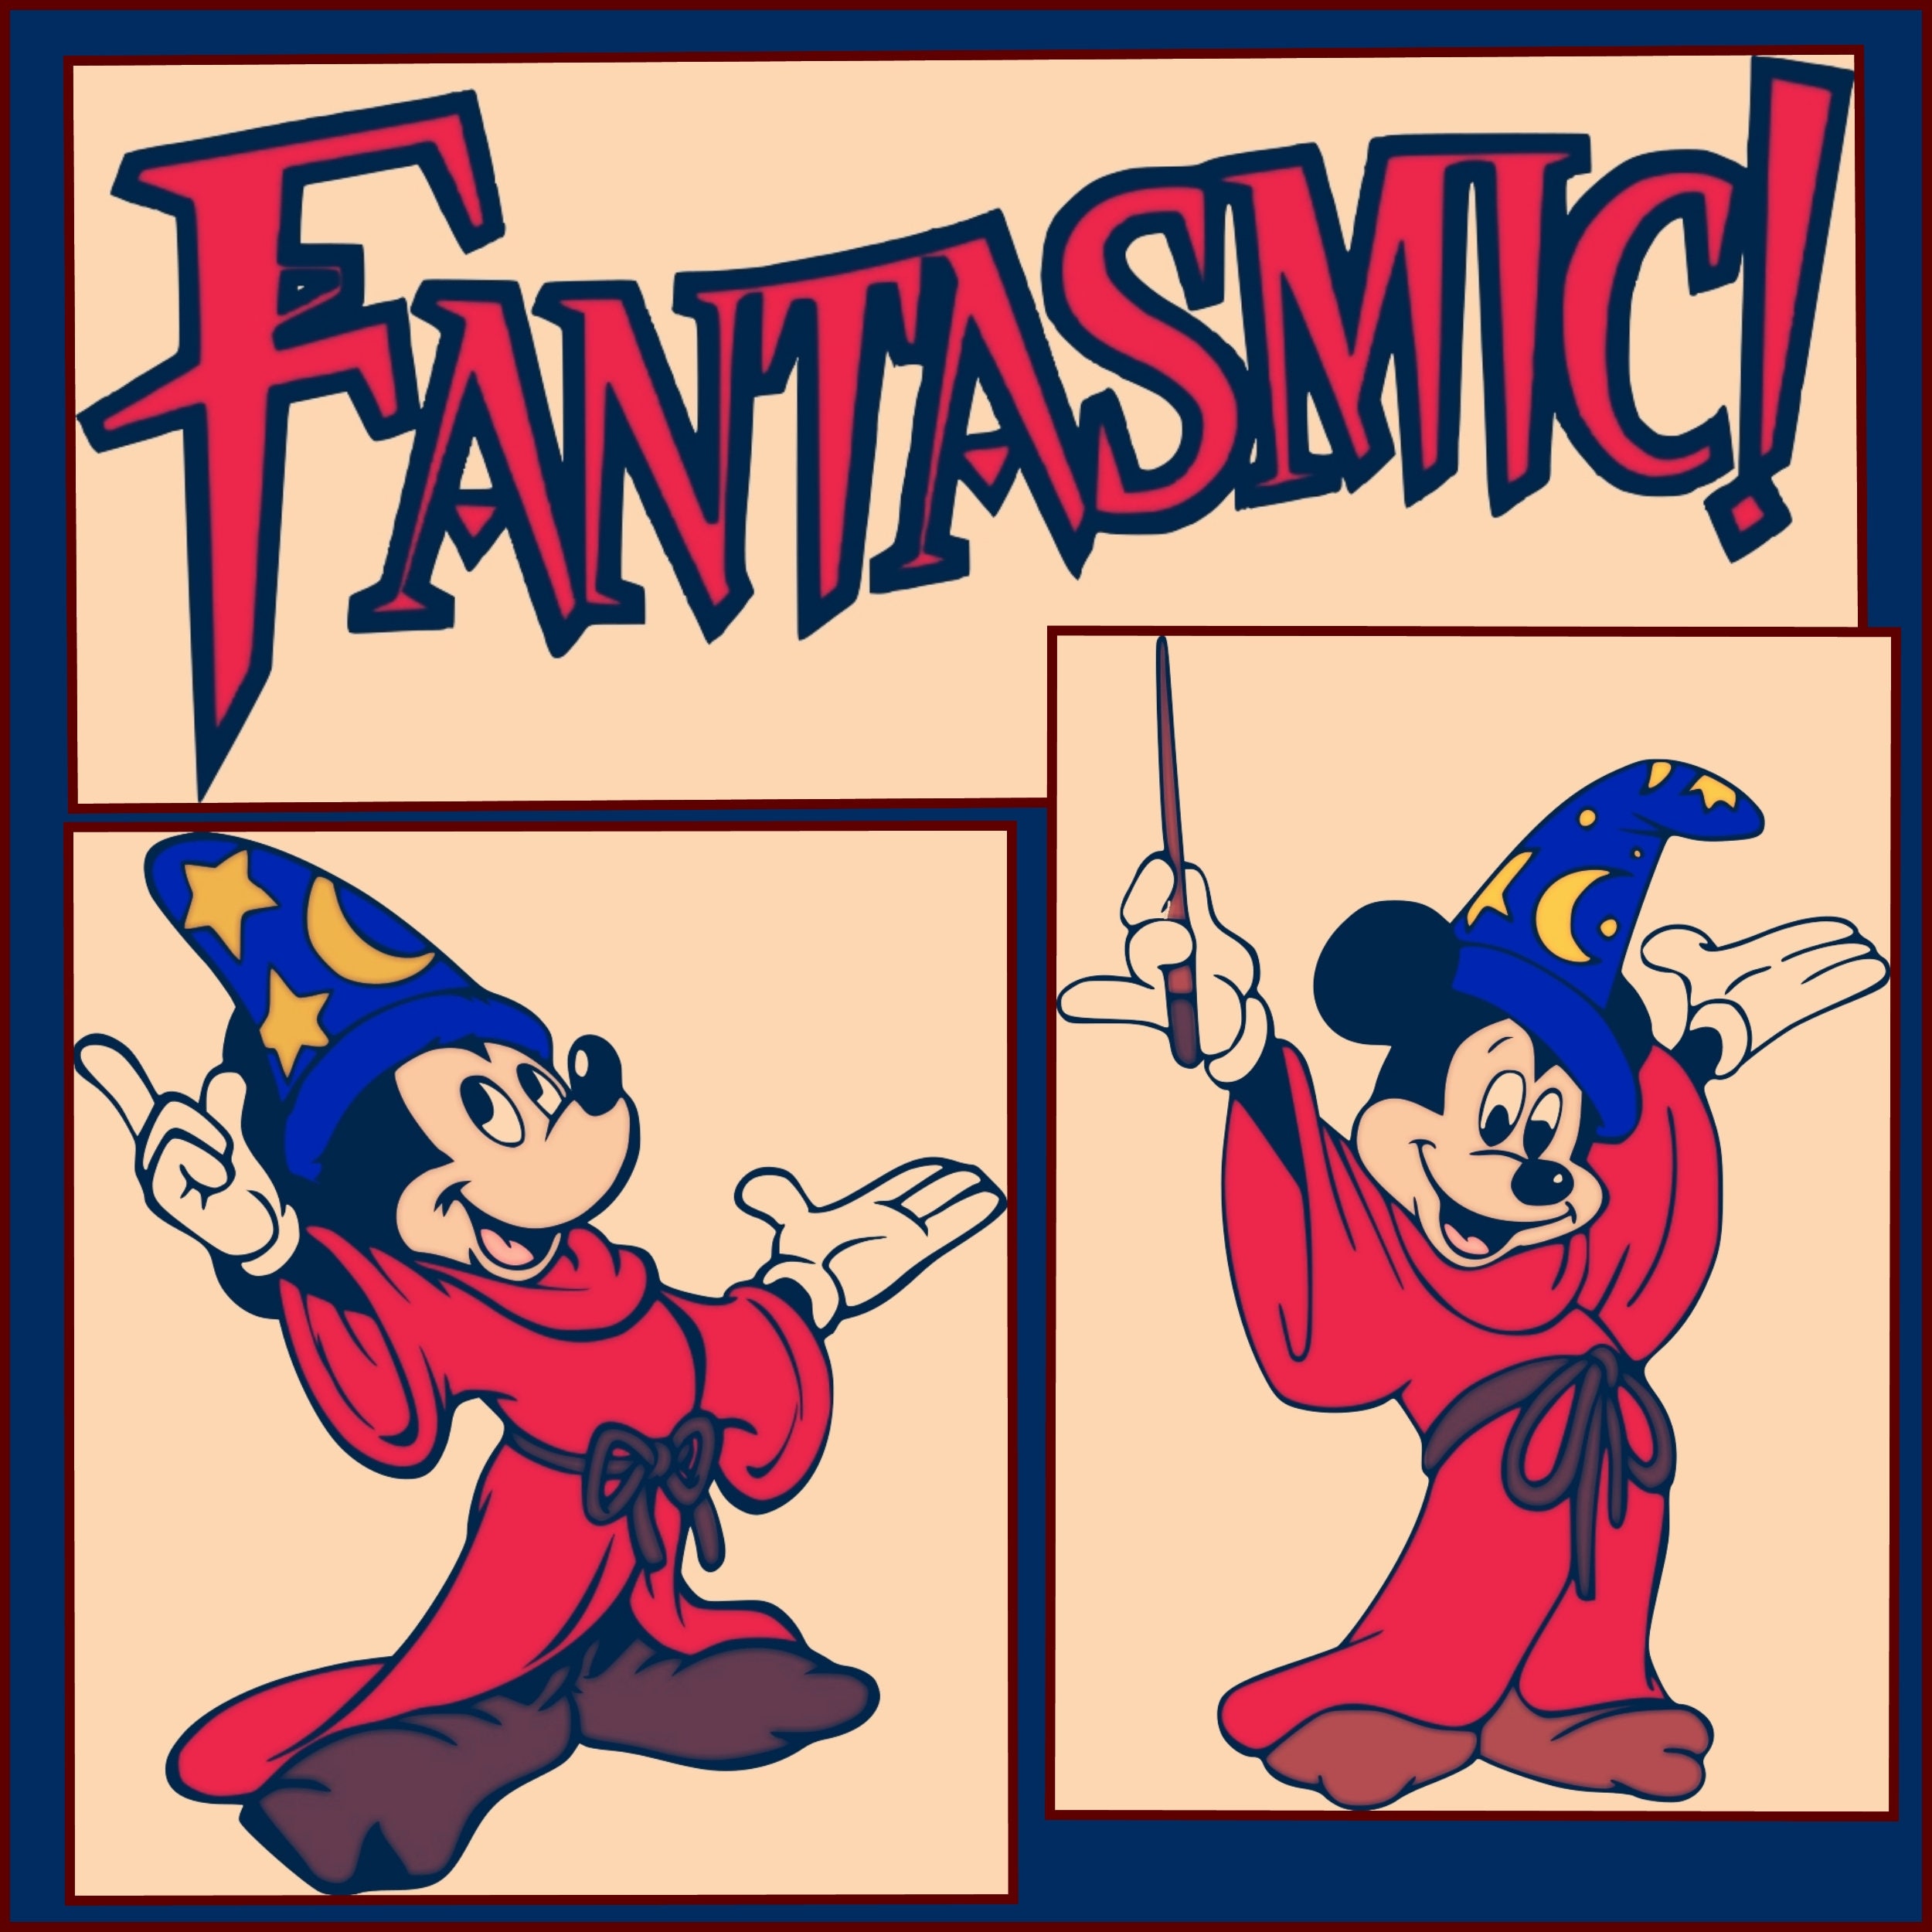 Download Disney SVG - Mickey Mouse svg png jpeg - Fantasmic svg ...